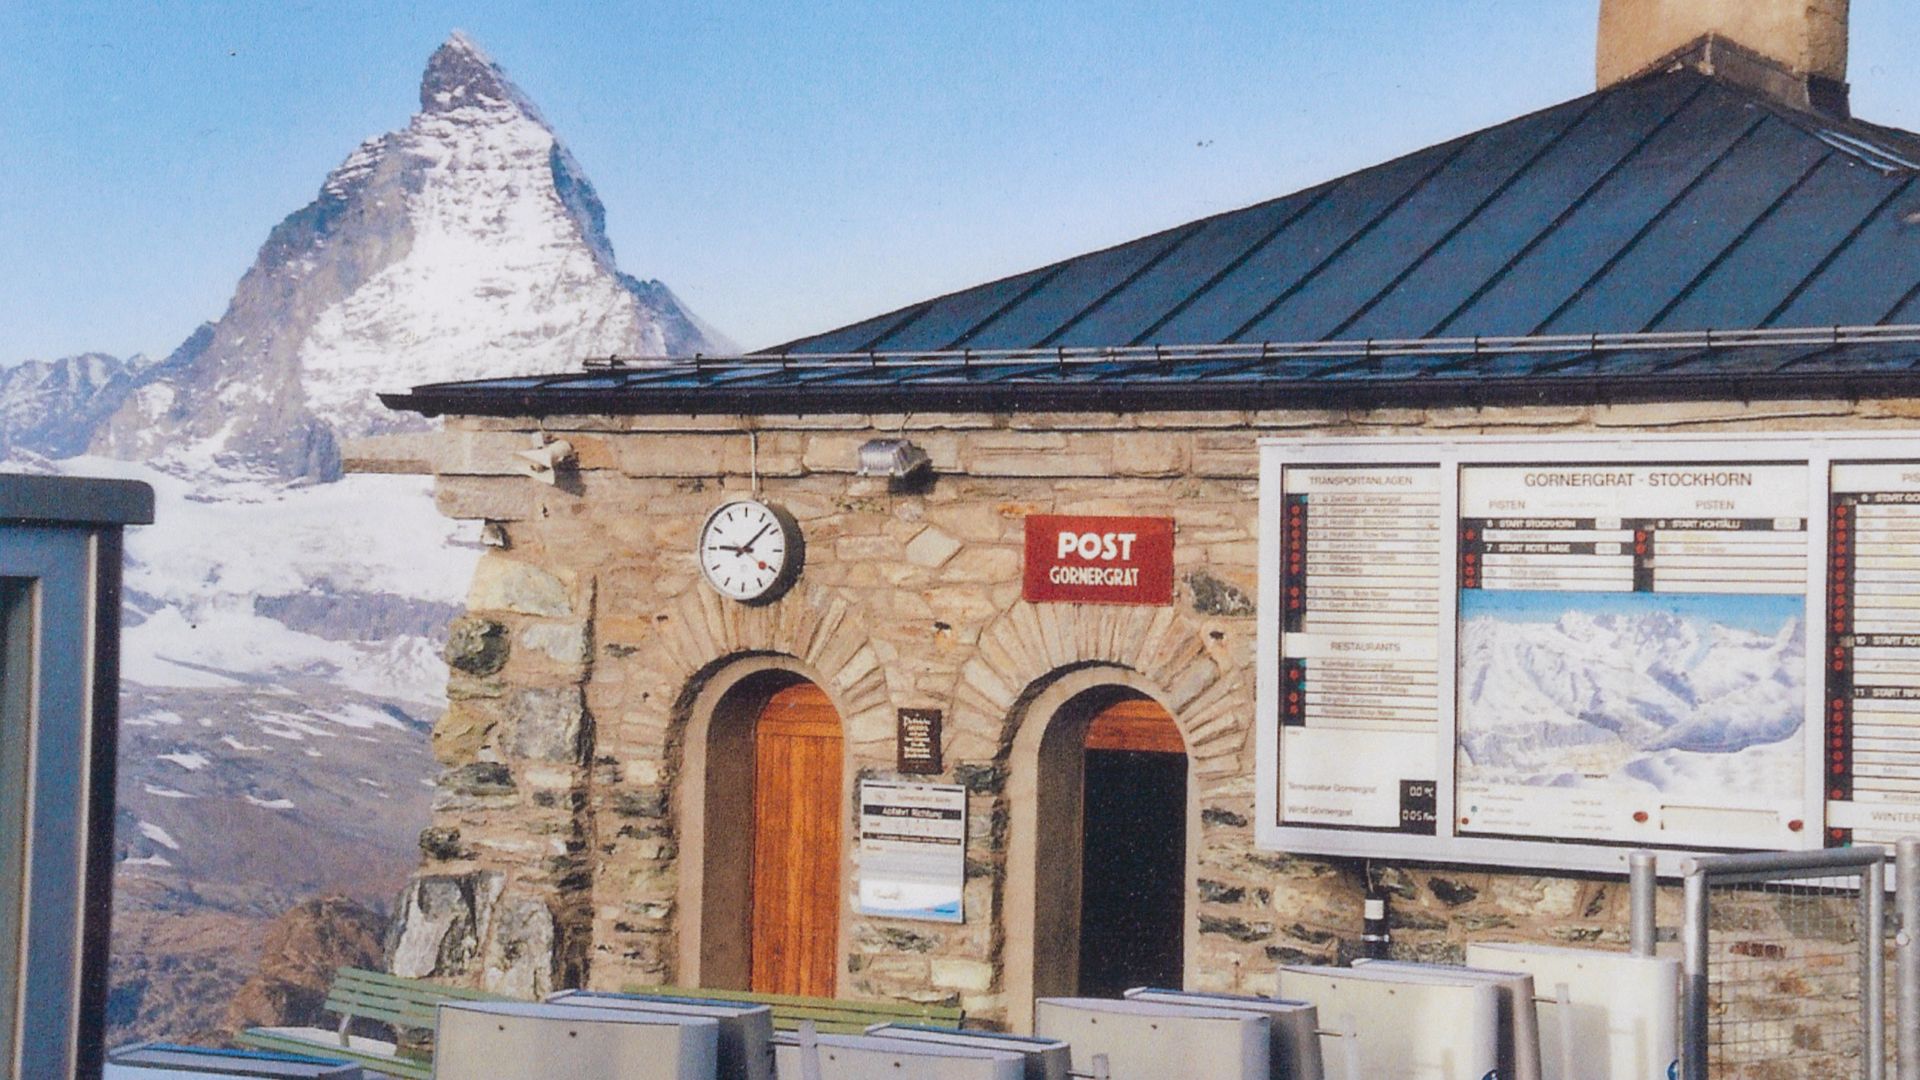 Poststelle Gornergrat